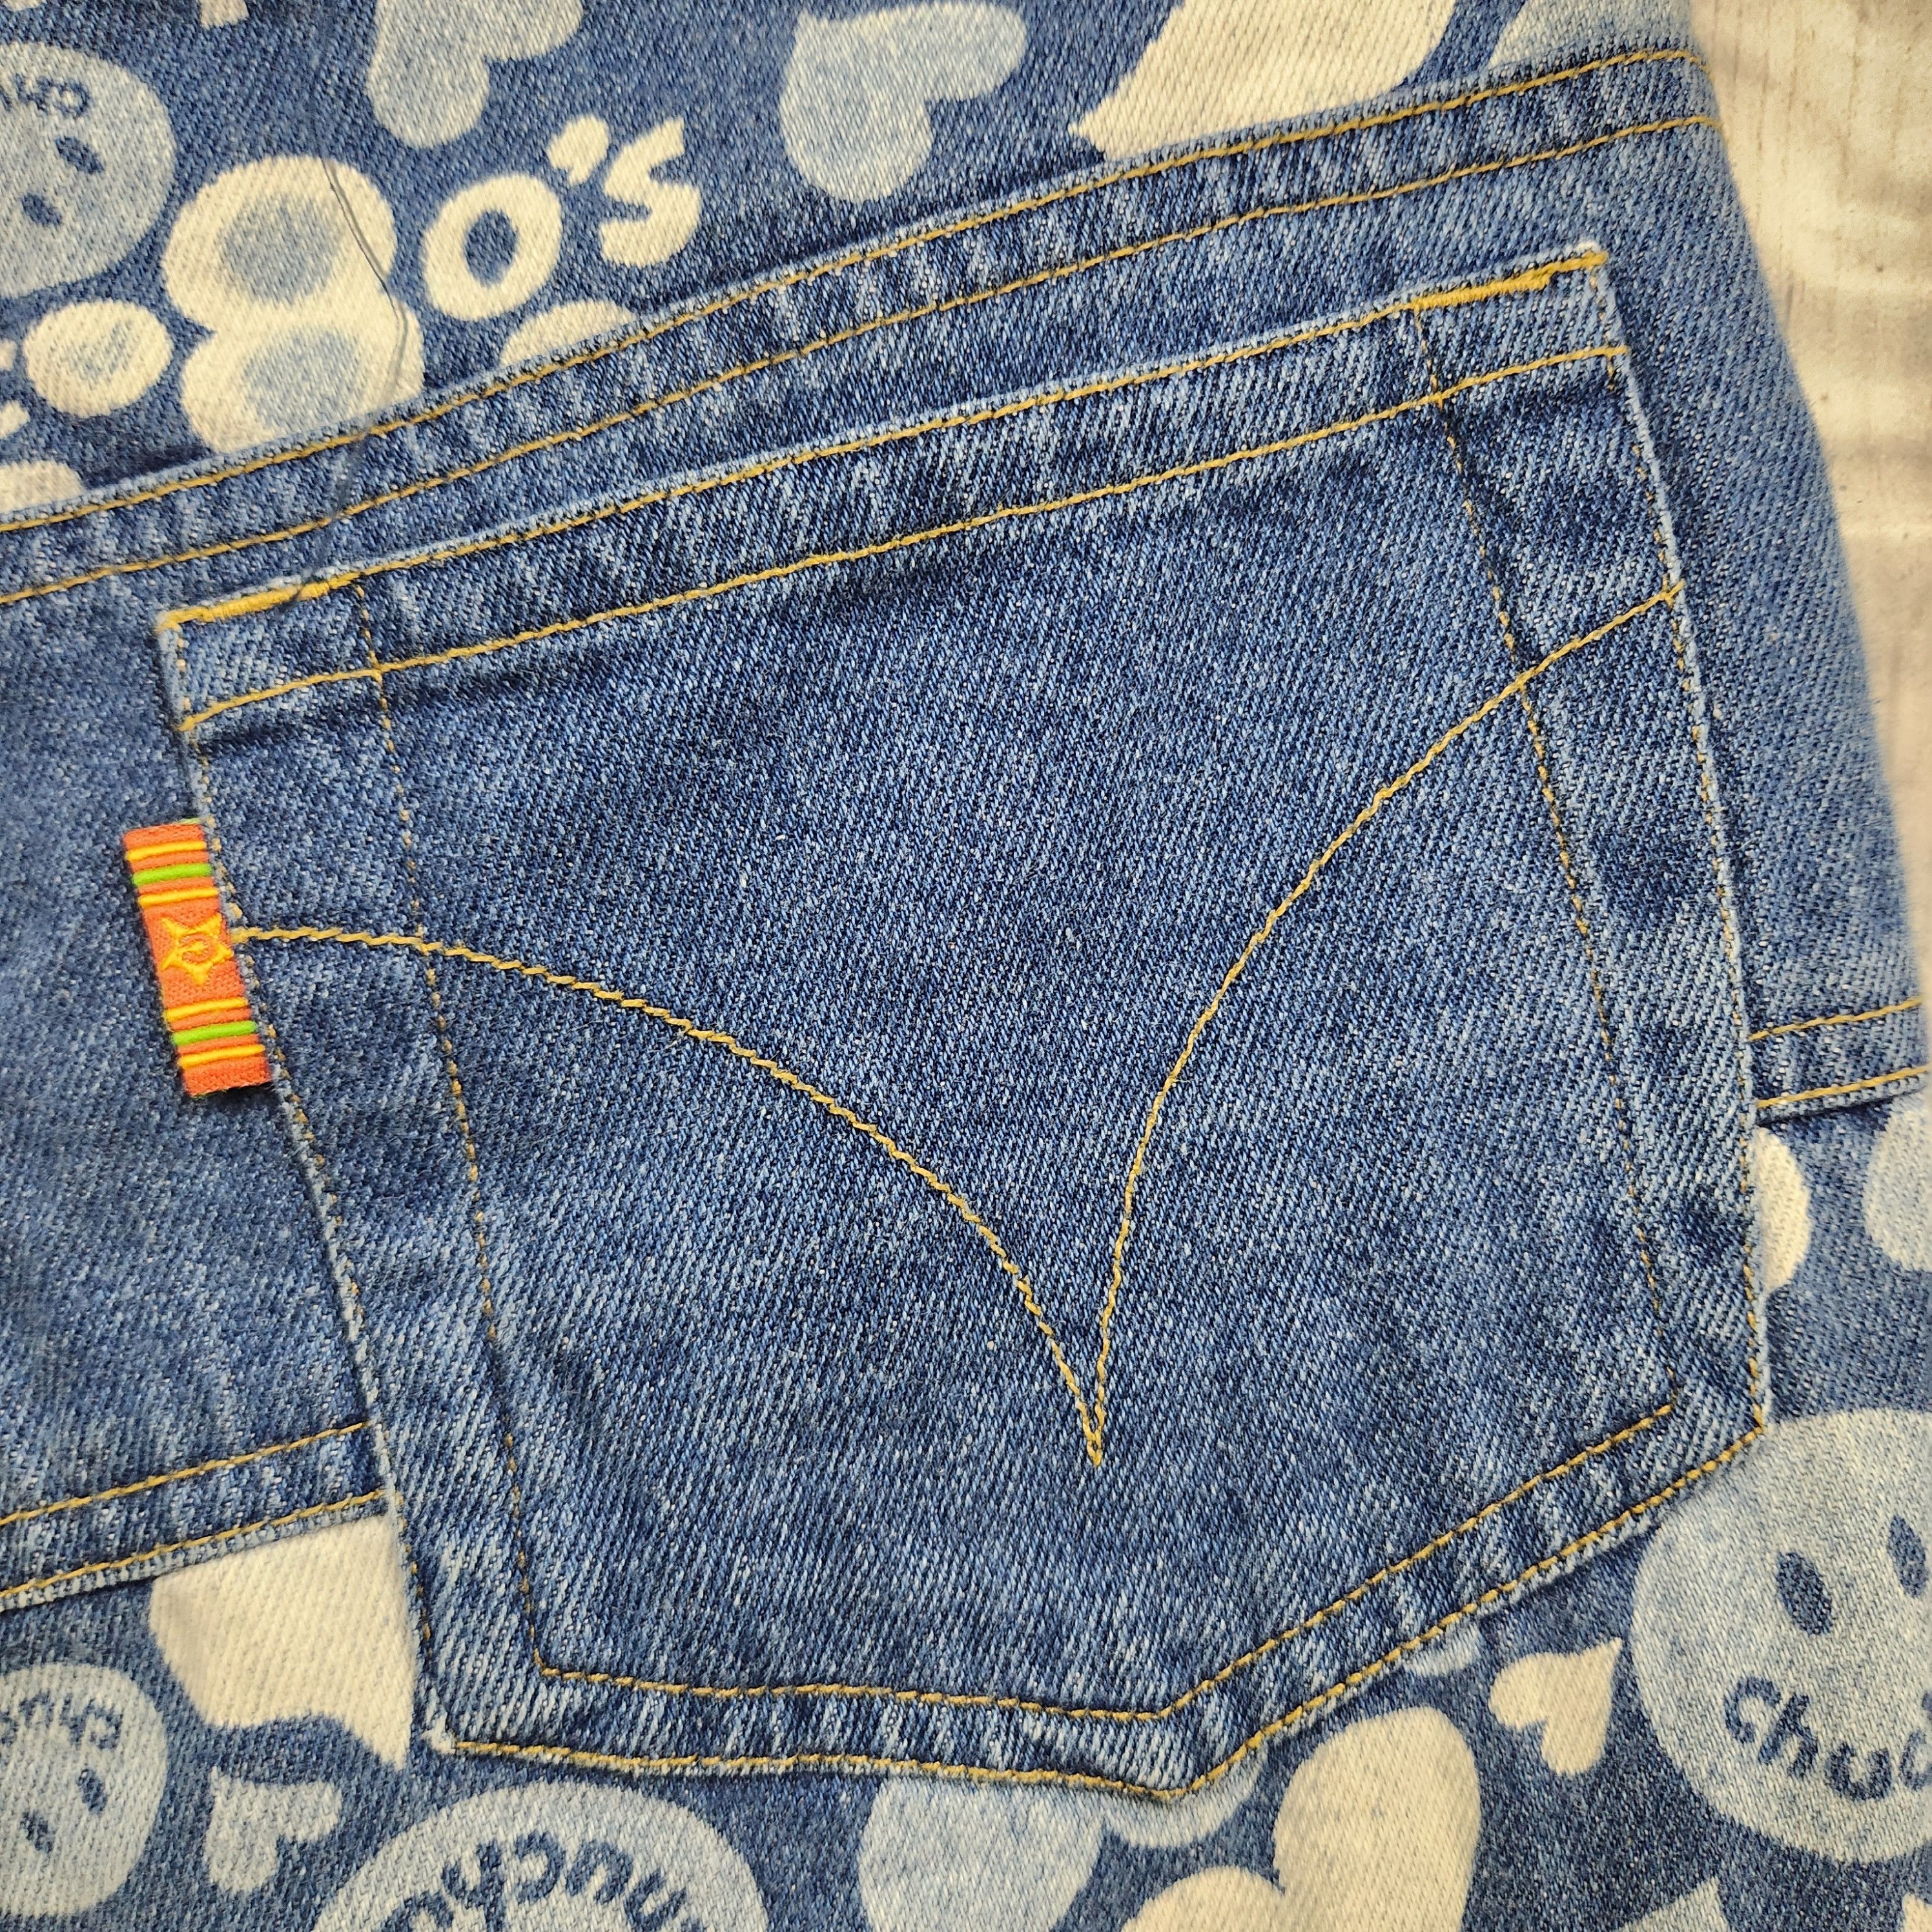 Disco 80s Chuchum Patches Denim Vintage Jeans Japan - 13